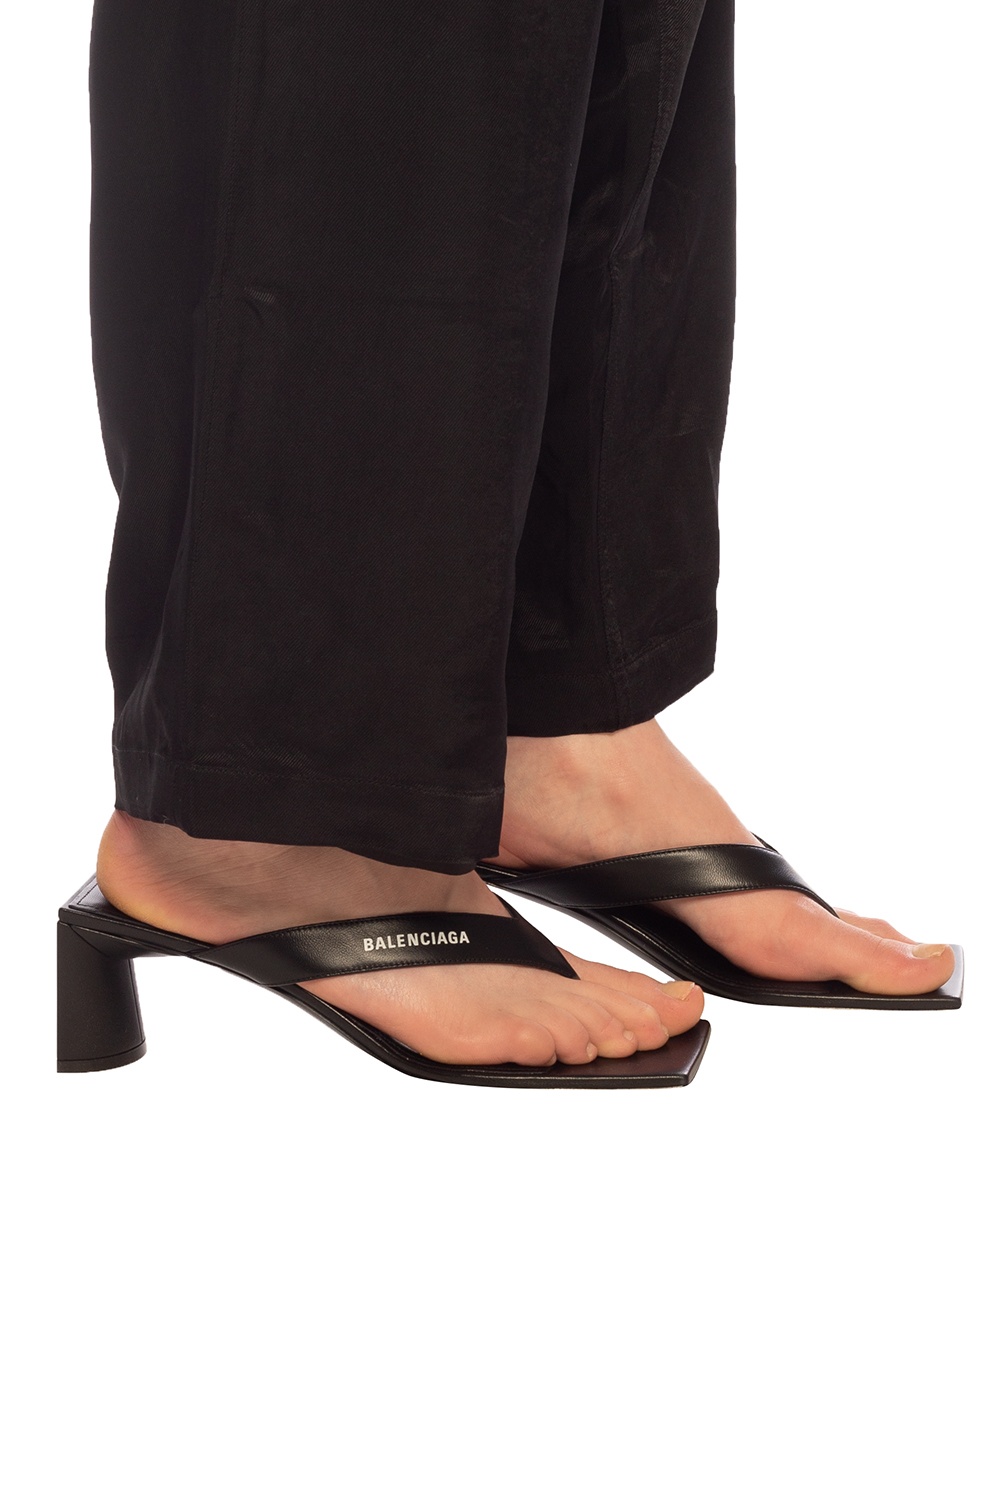 balenciaga sandals womens 2015